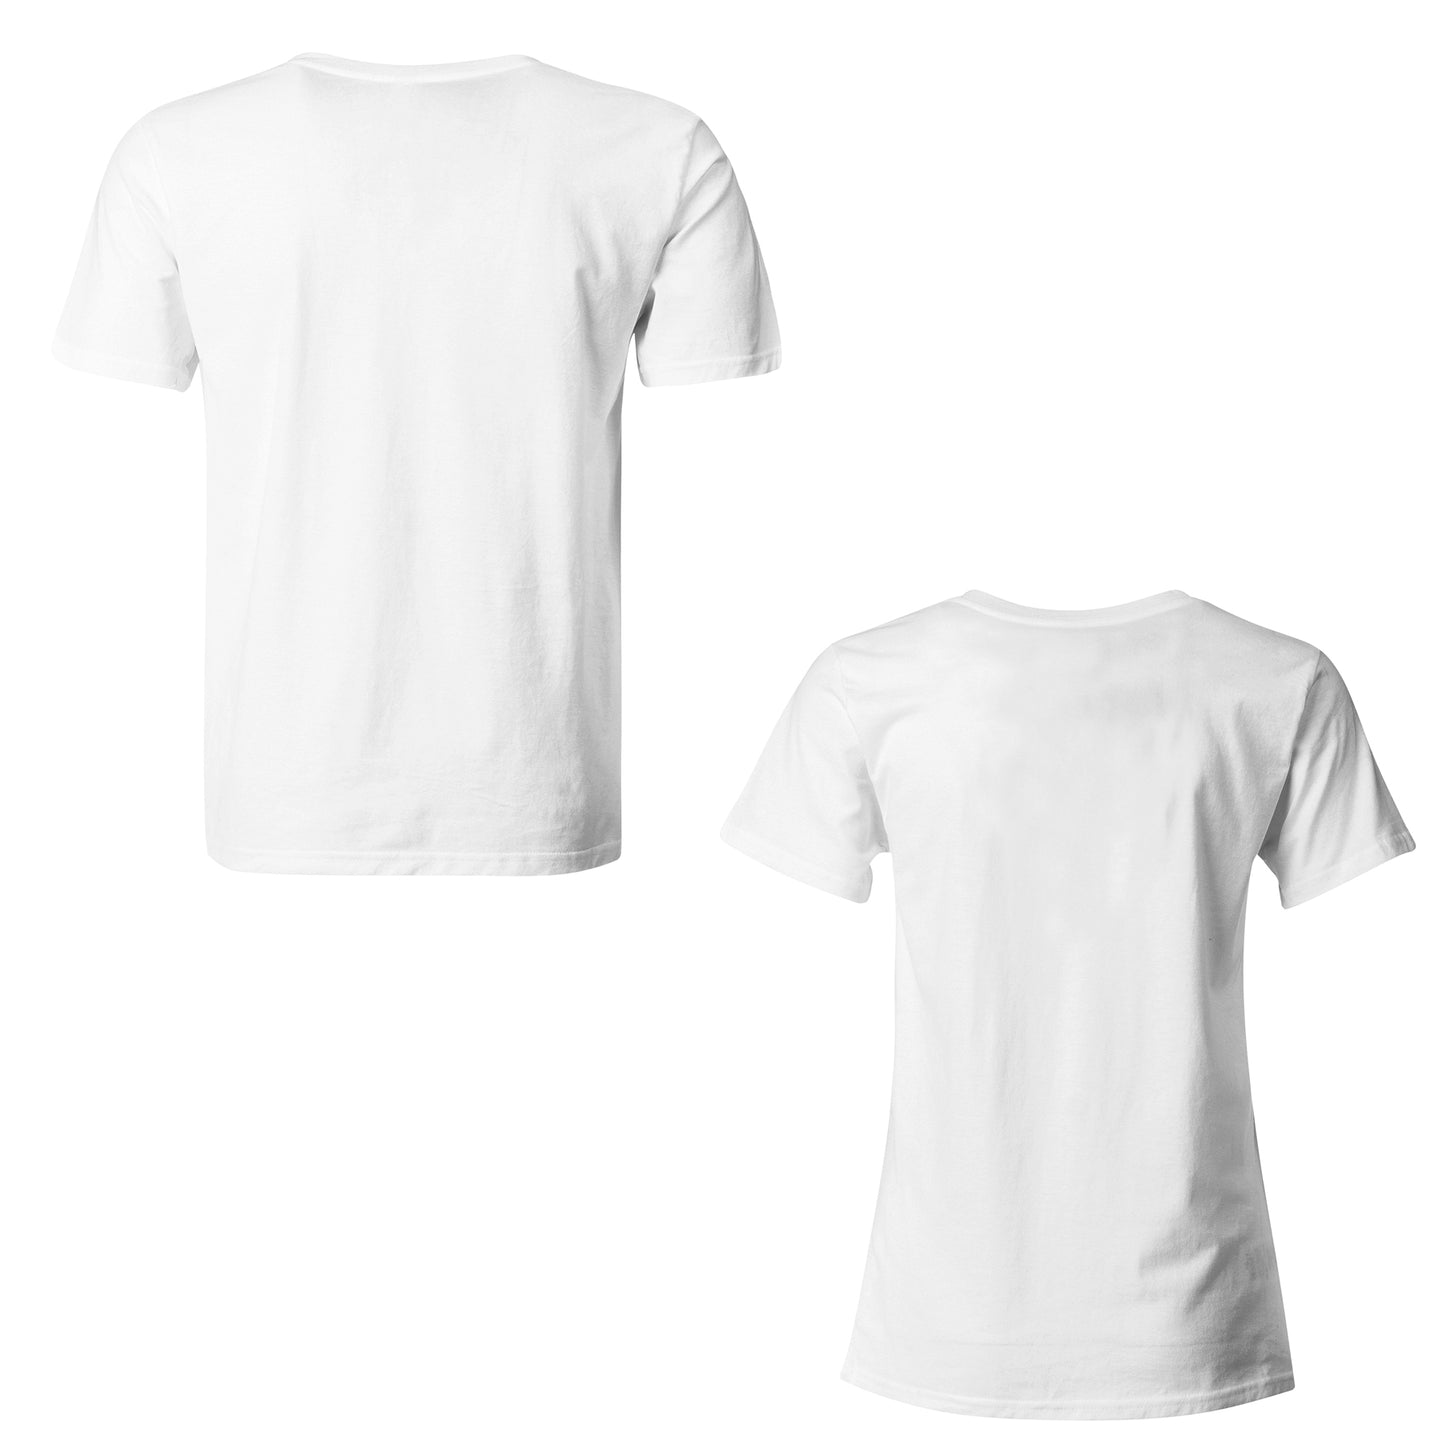 Hotspot WiFi matching Couple T shirts- White